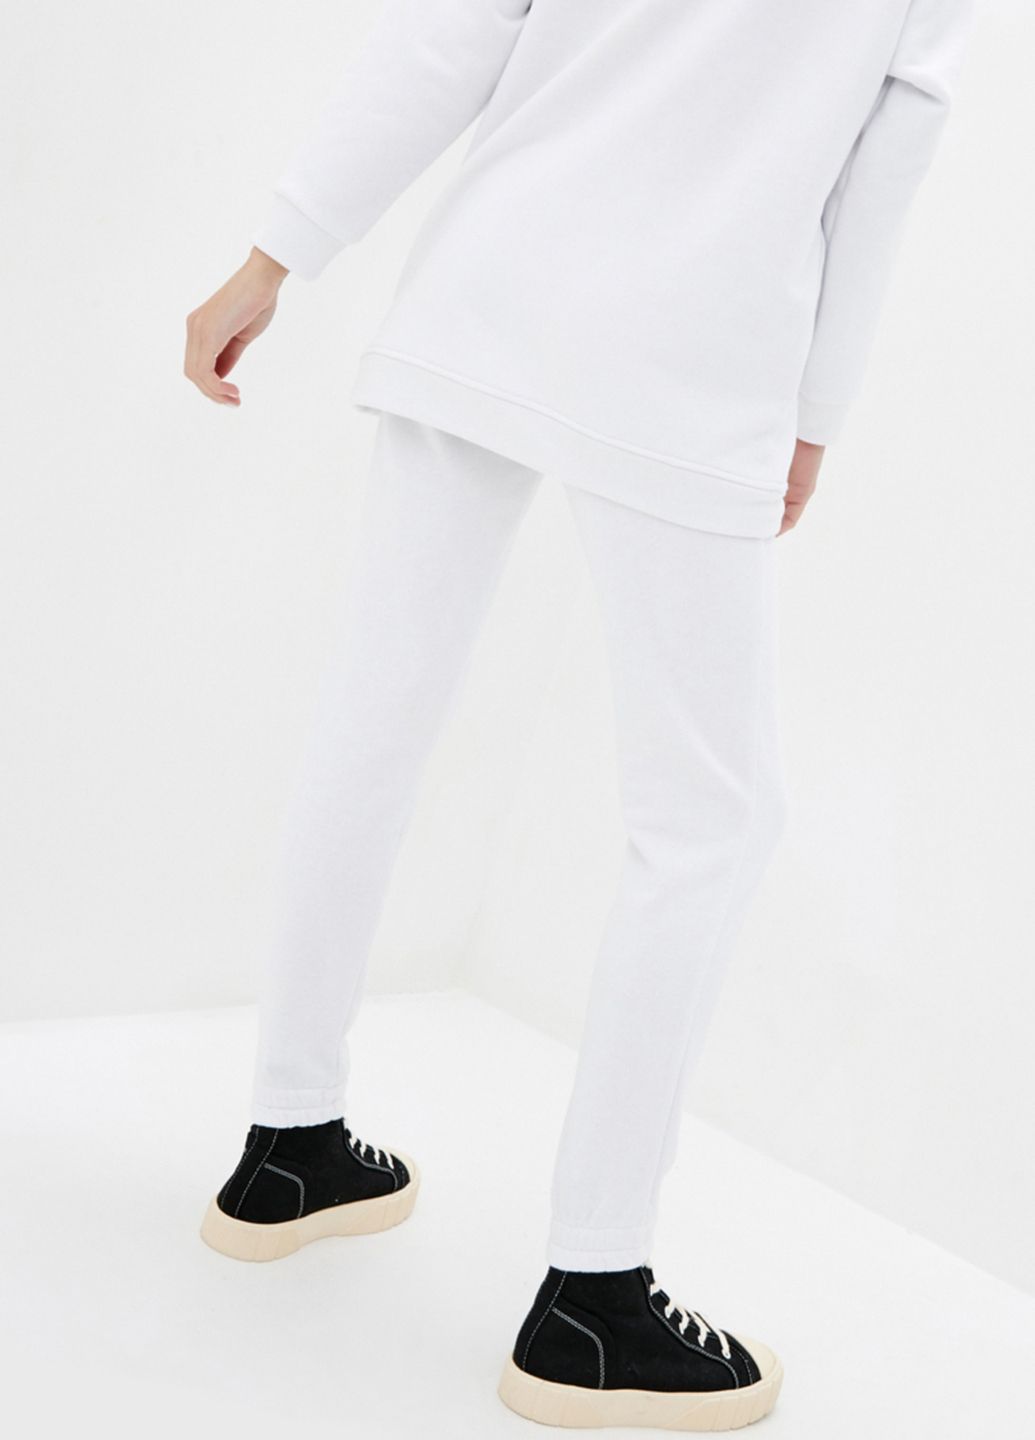 Купить Спортивные штаны женские Merlini Мадрид 600000047 - Белый, 42-44 в интернет-магазине